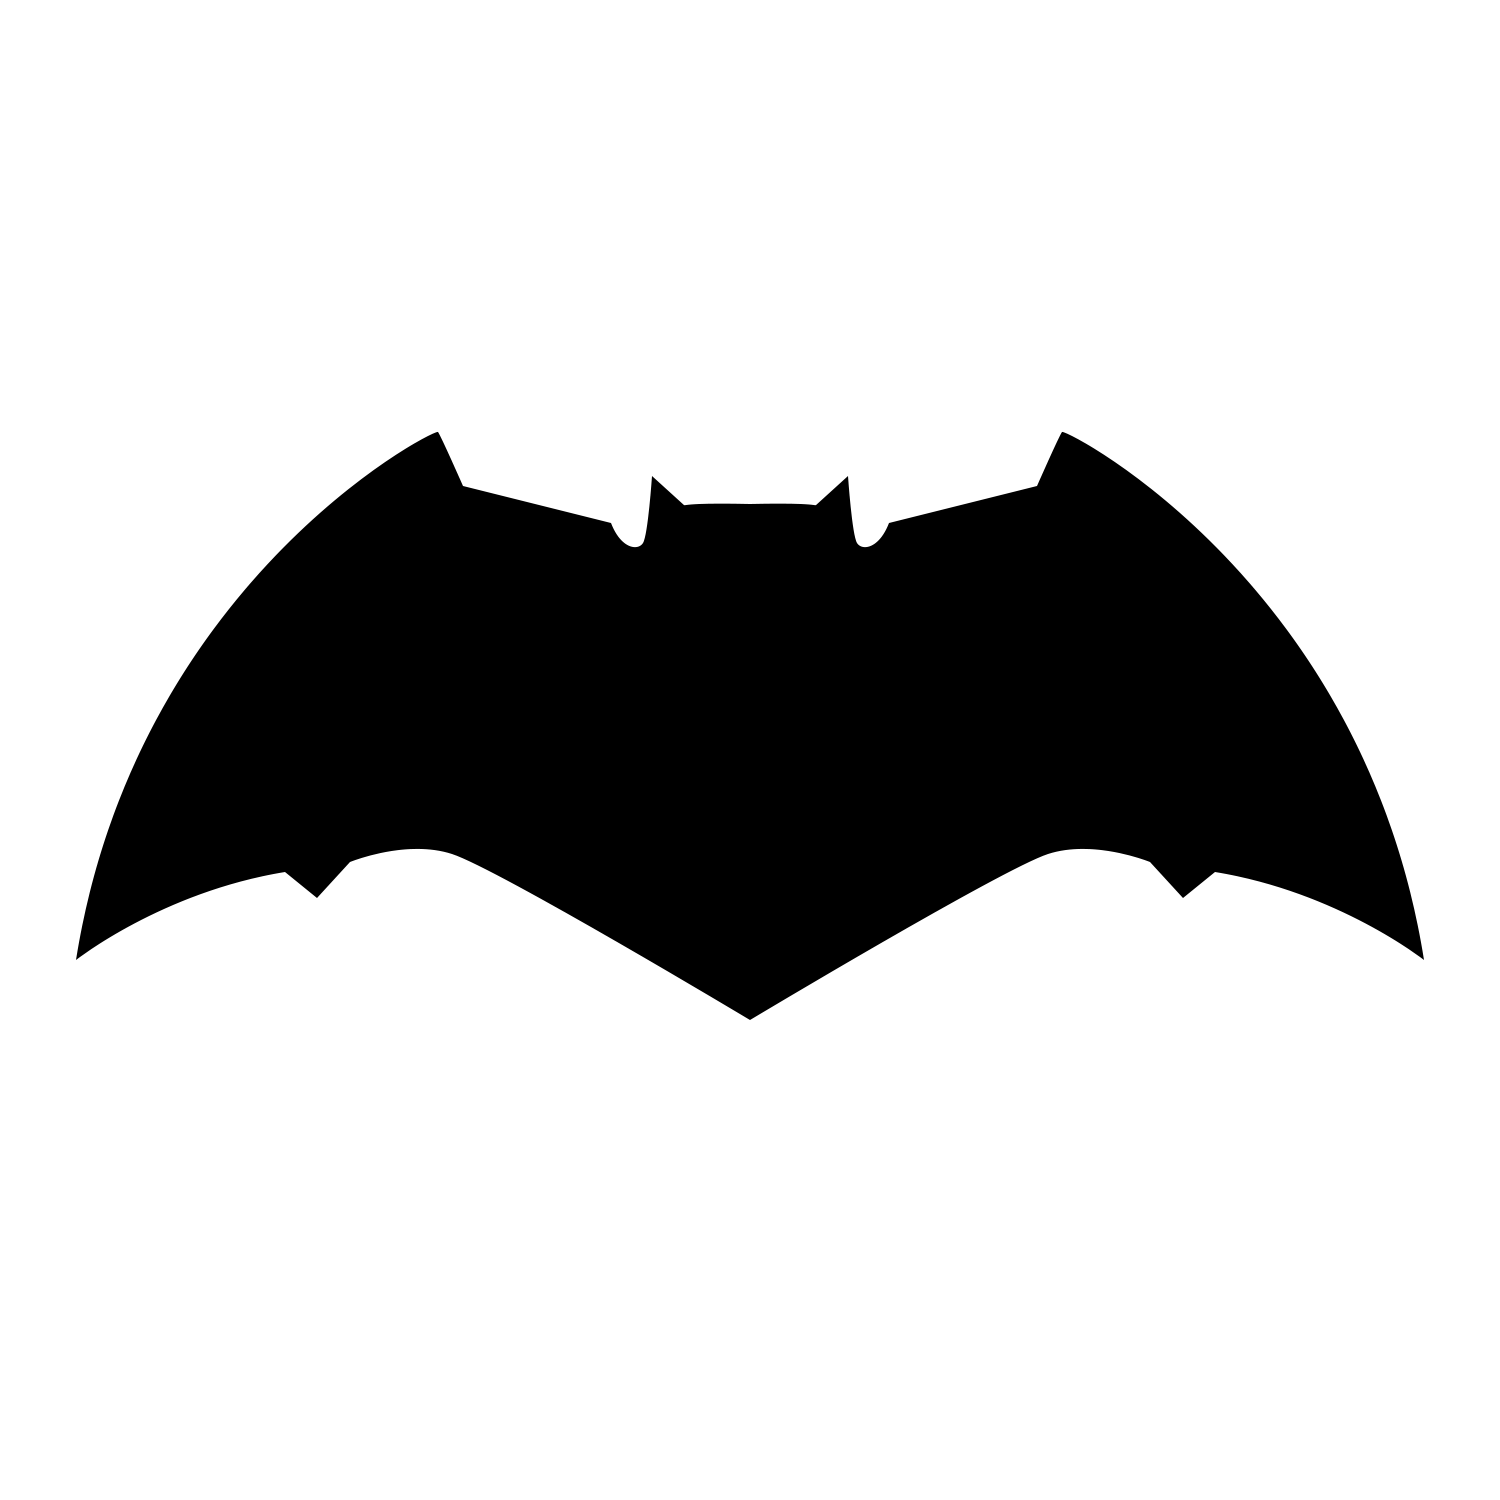 New Bat Logo - New Batman Logo Png Images